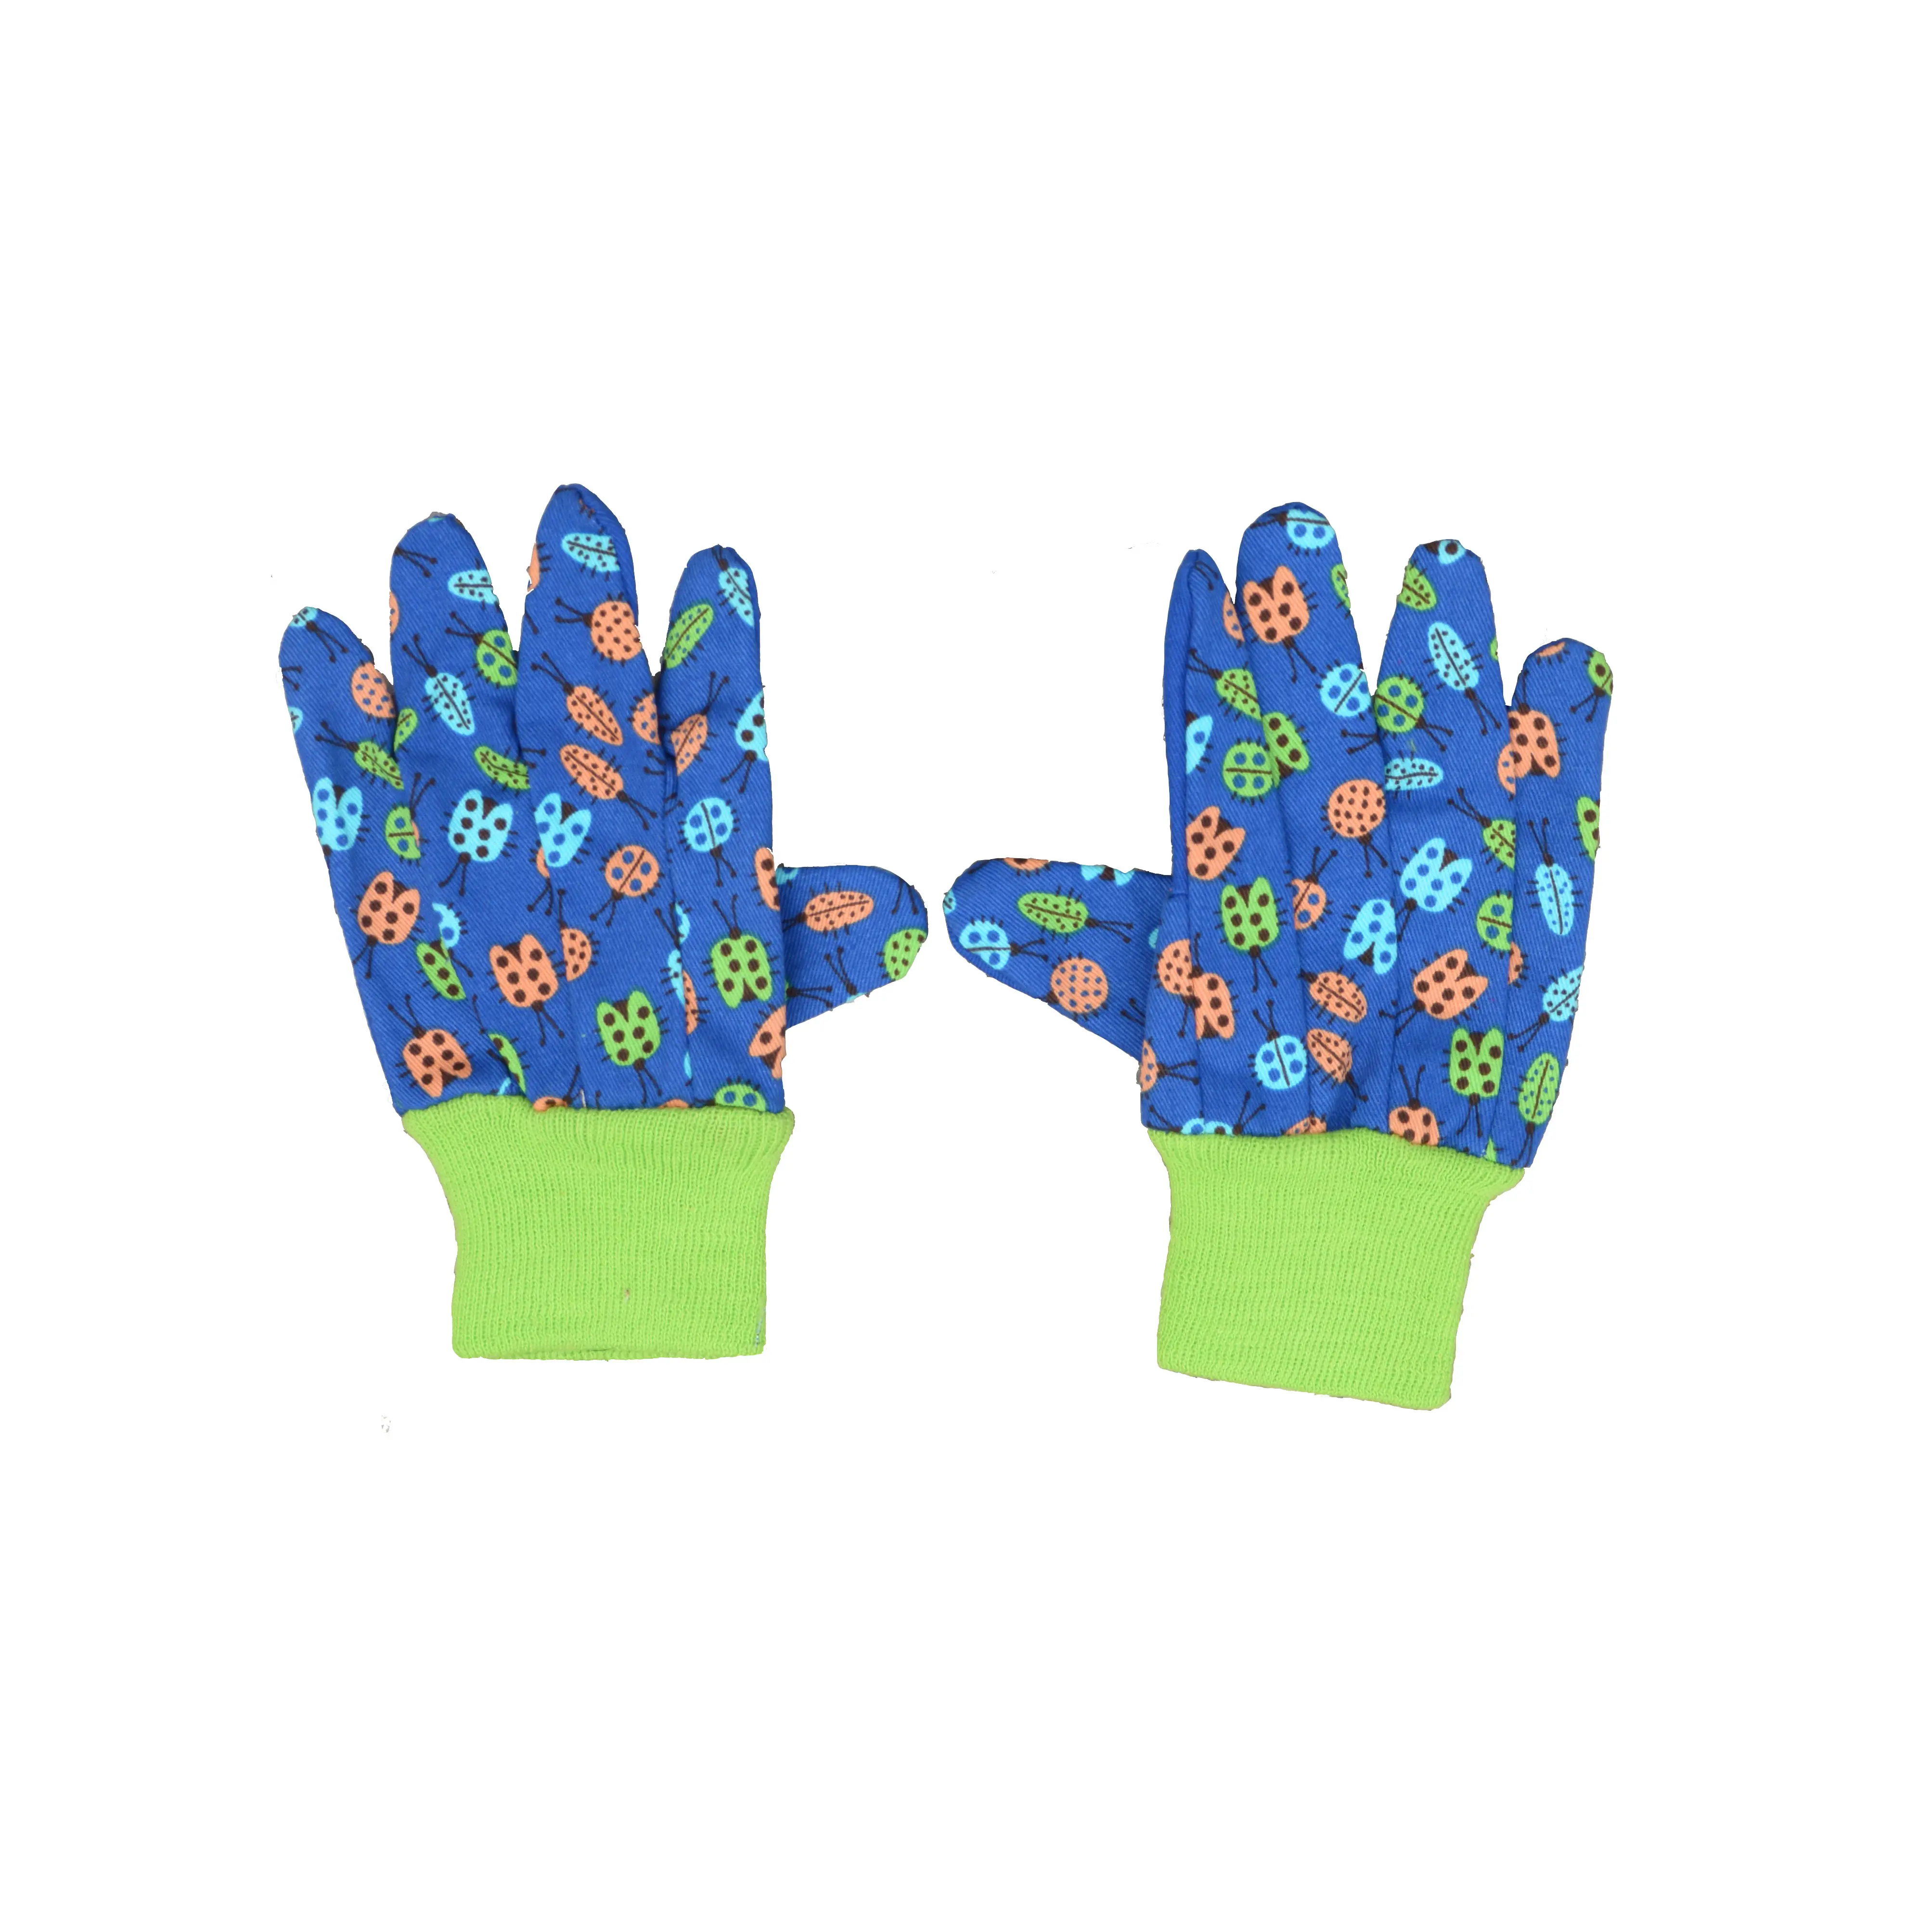 PRI Dark blue cotton palm insect print children garden gloves